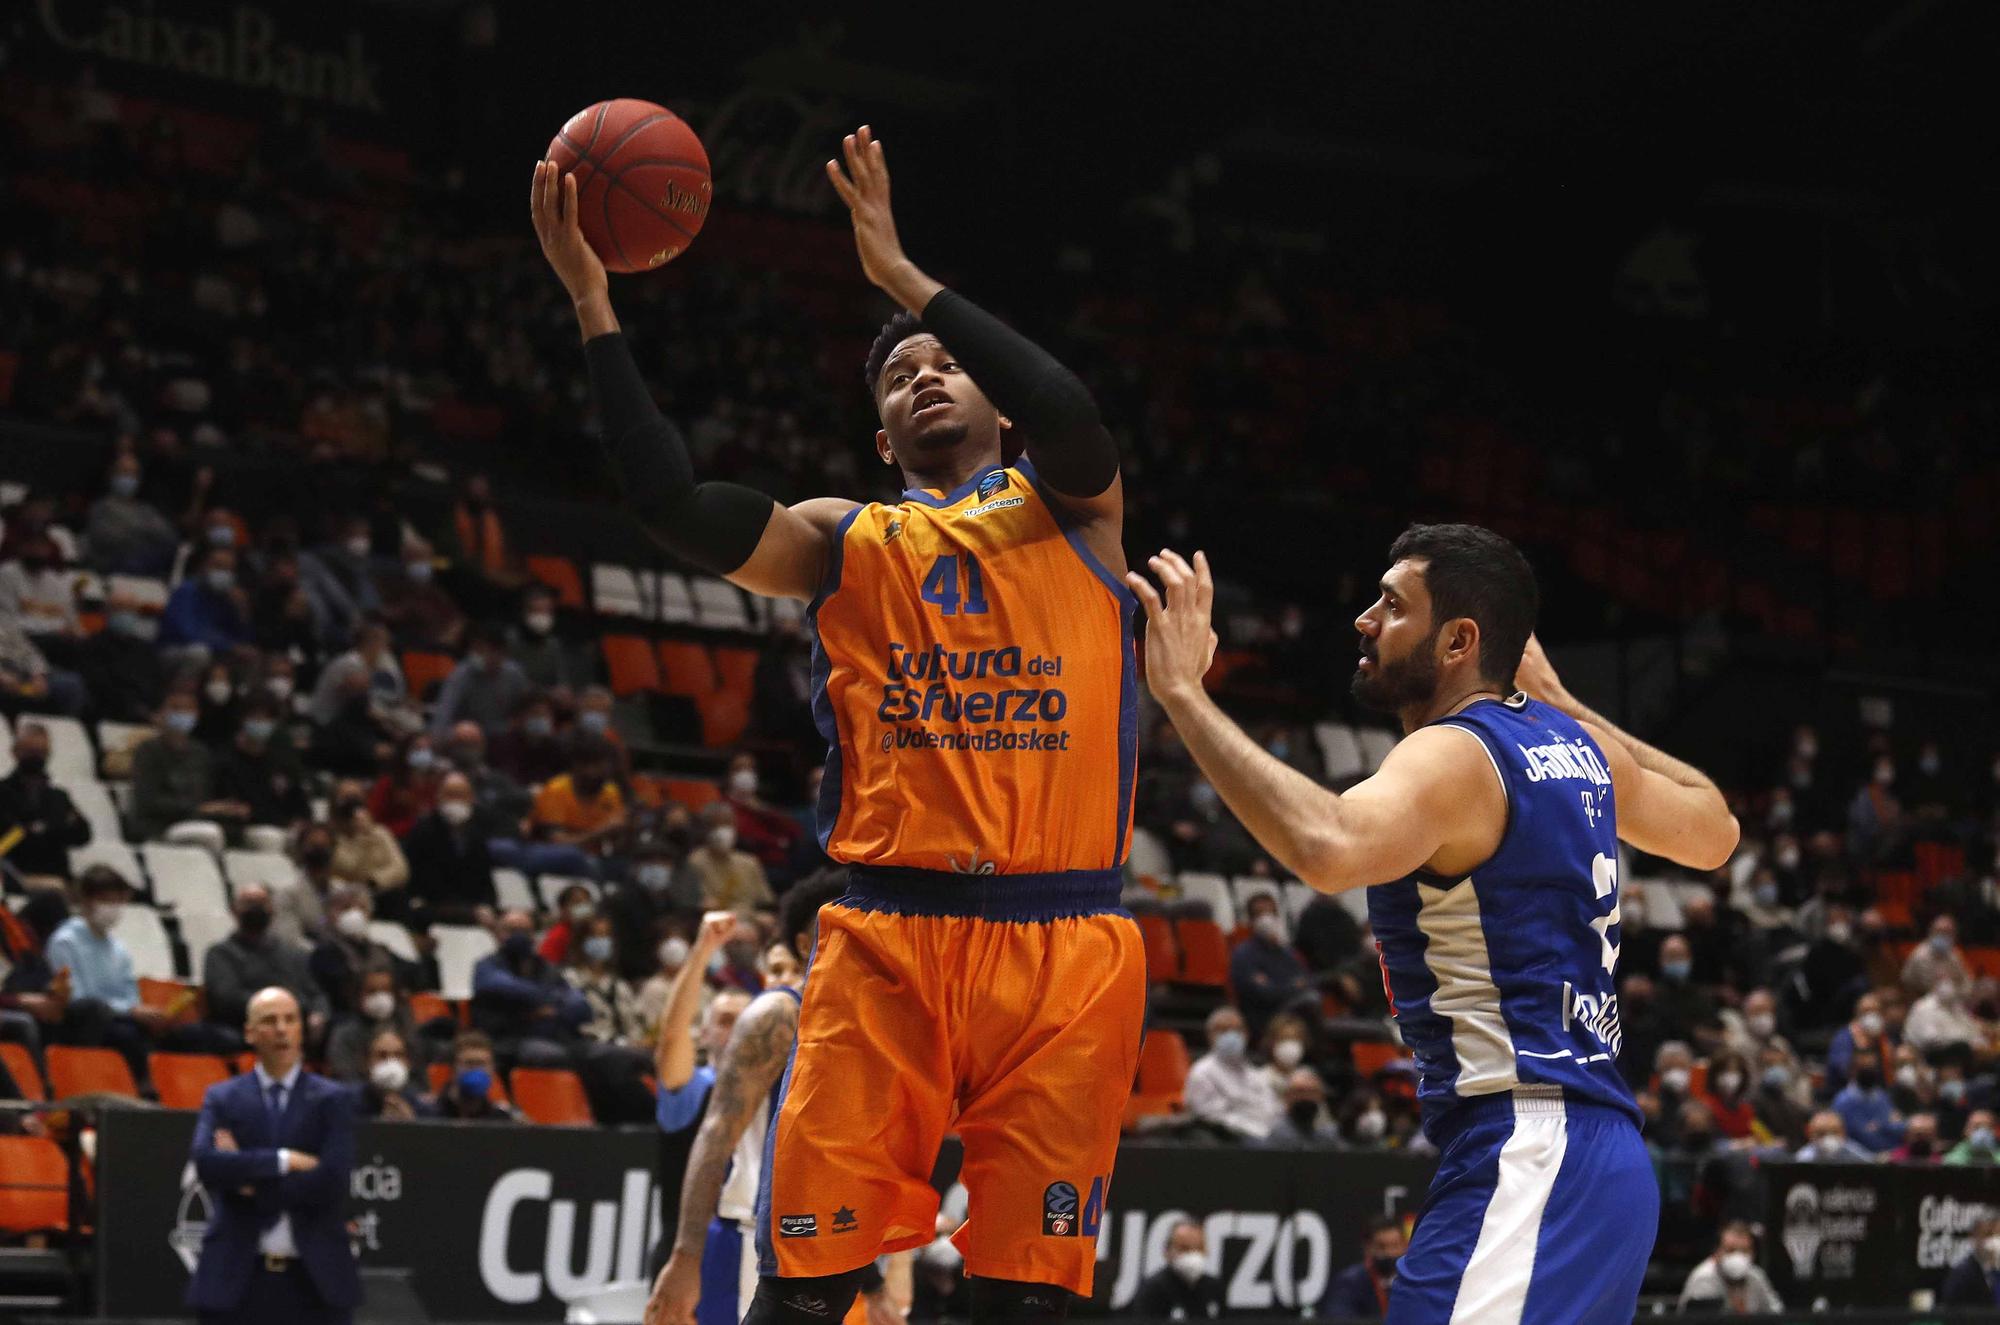 La  victoria de Valencia Basket ante el Buducnost